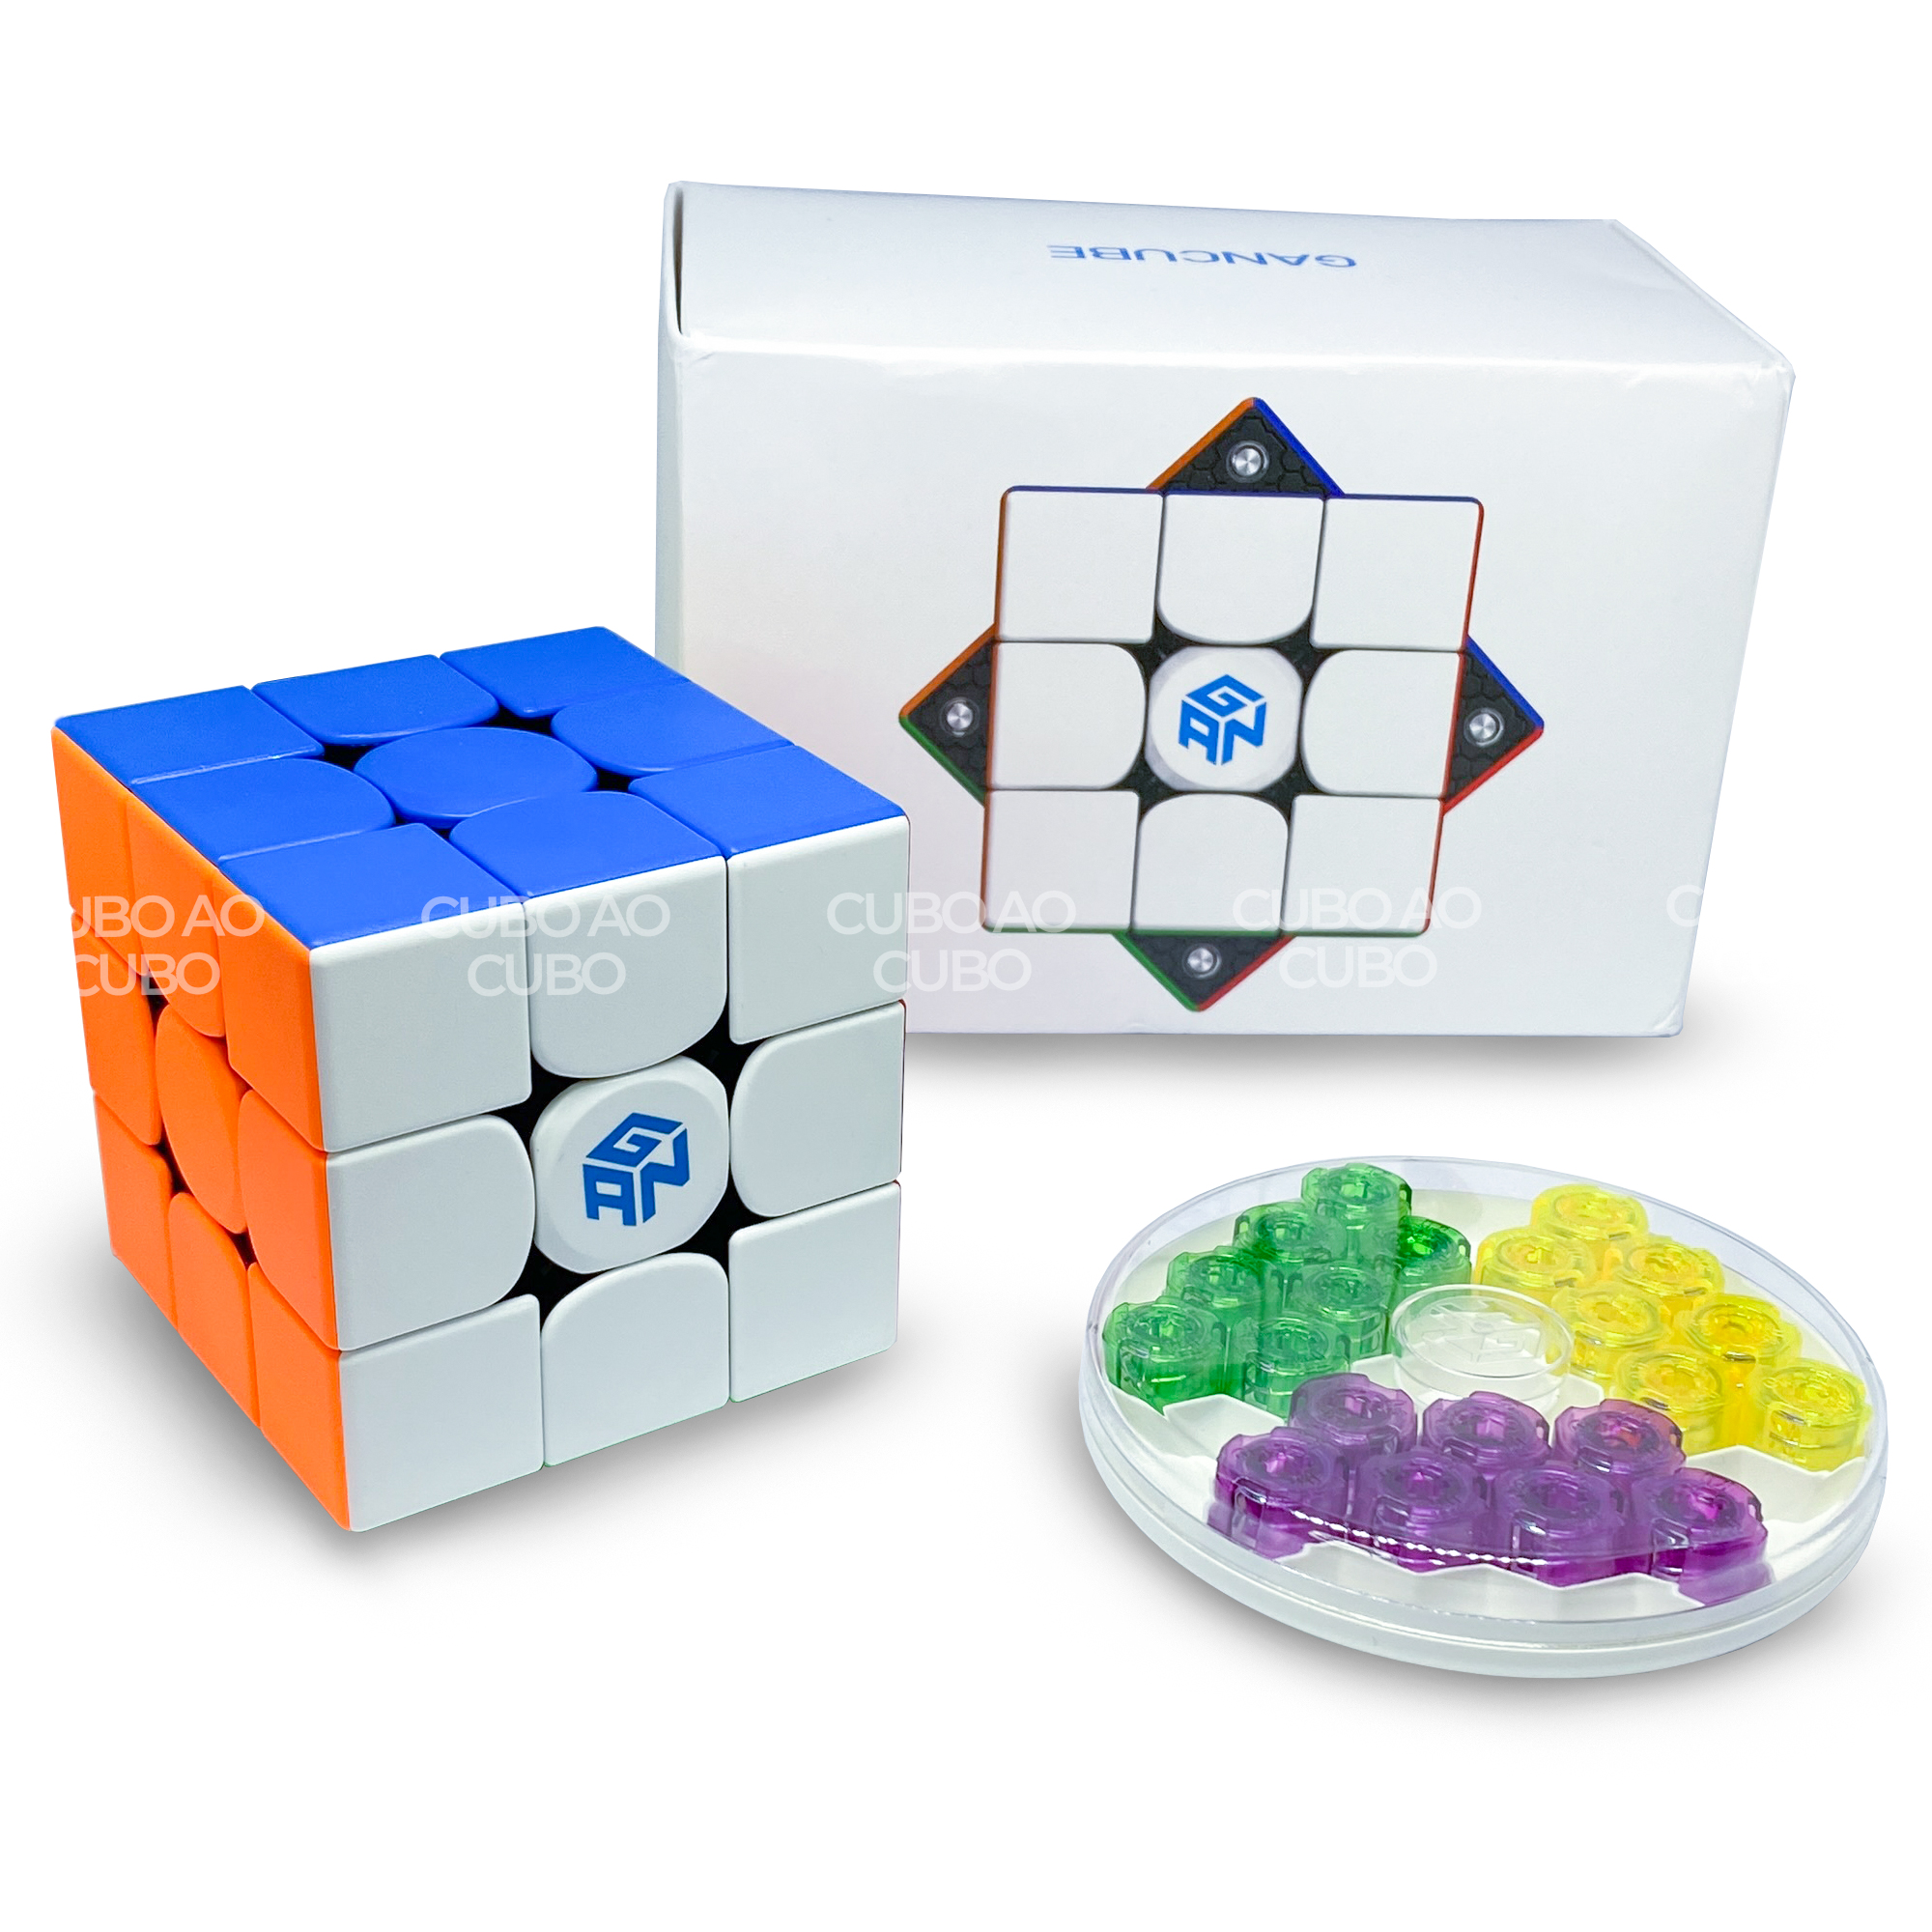 Qiyi Cubo Mágico Magnético 3x3x3 Profissional Rubick 3x3 Ímã Cubo